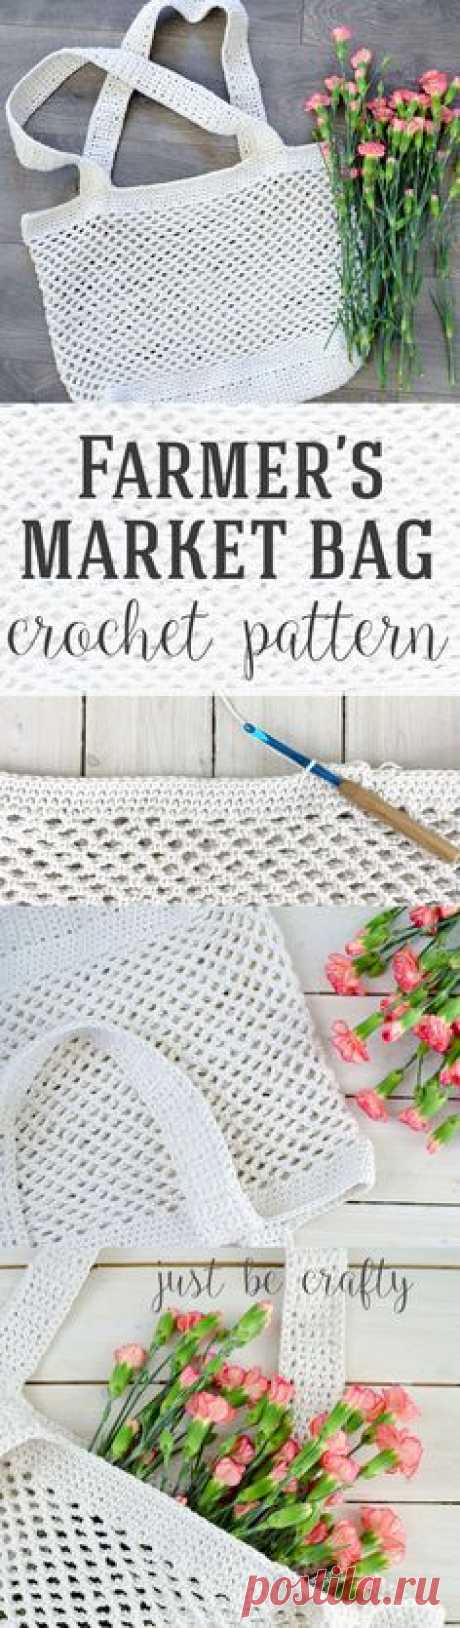 Farmer's Market Bag Crochet Pattern - FREE Pattern by Just Be Crafty!